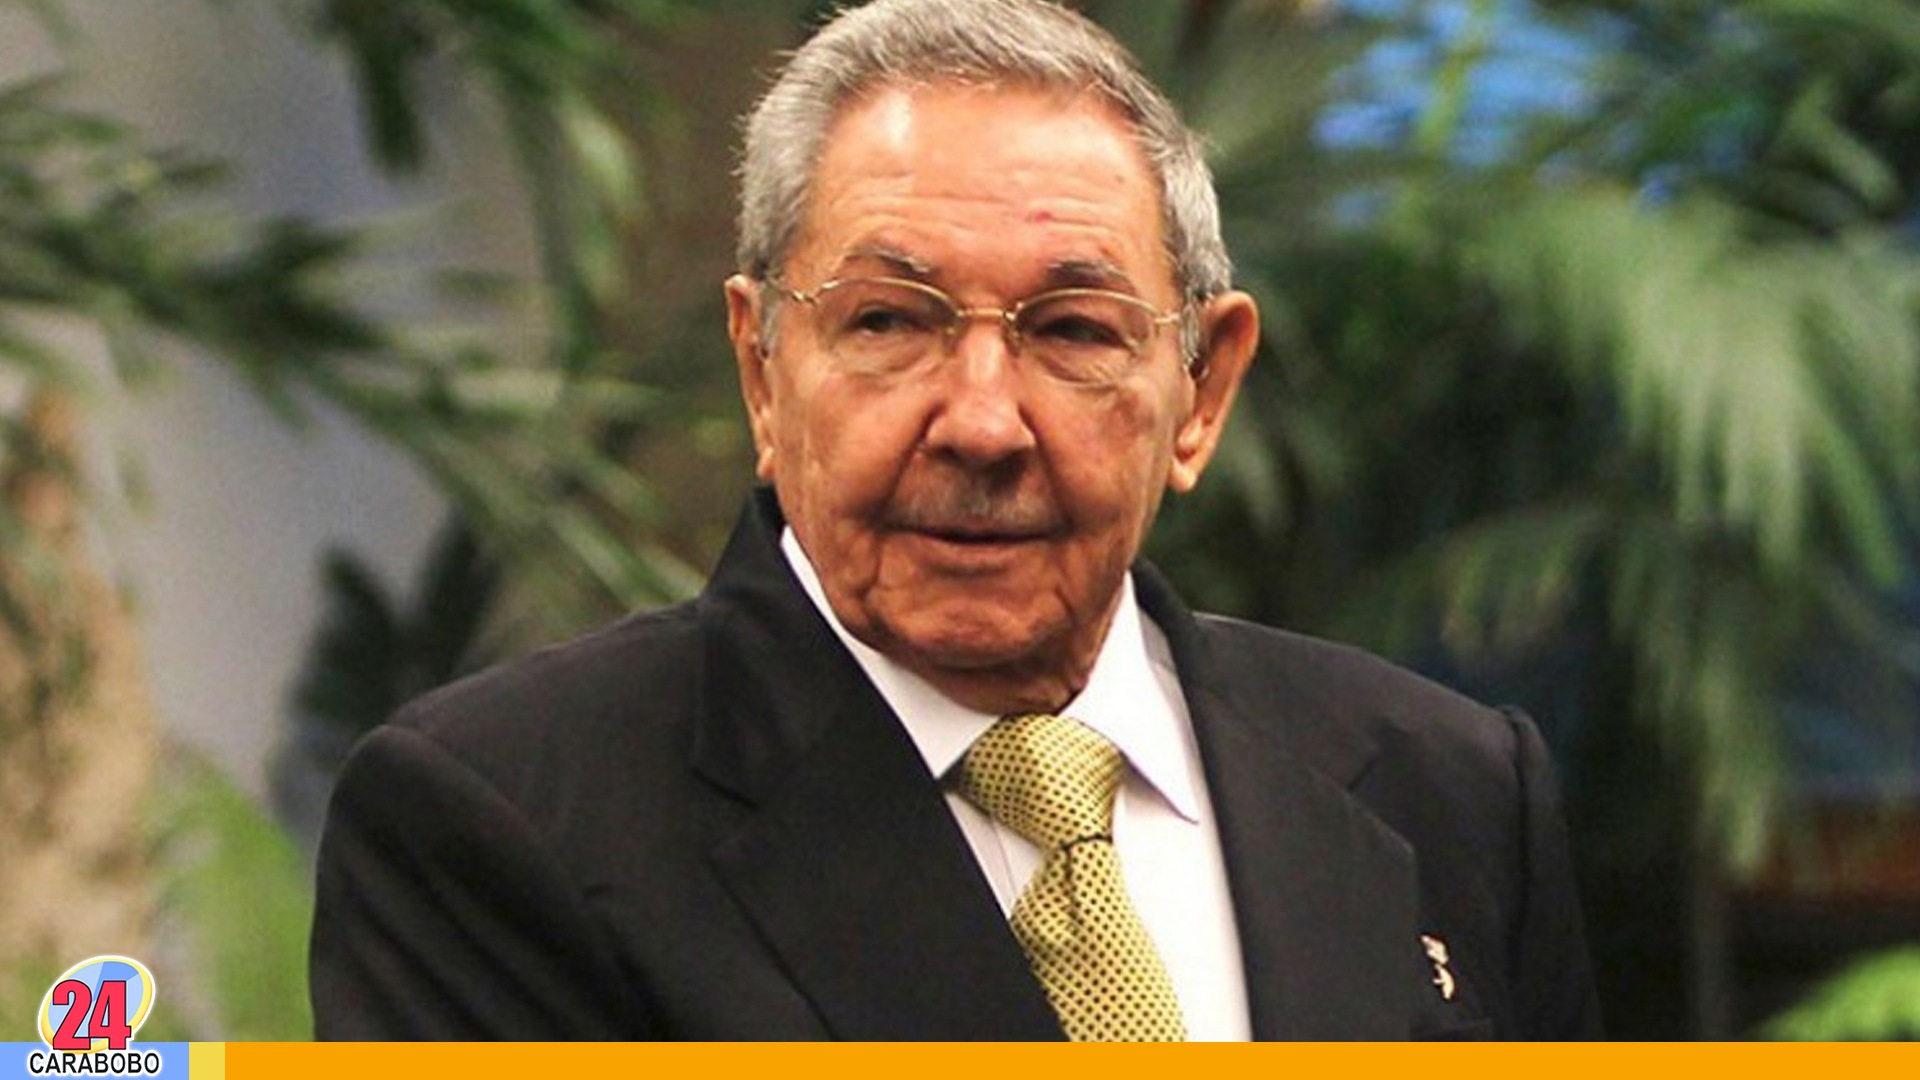 Raúl Castro - Raúl Castro